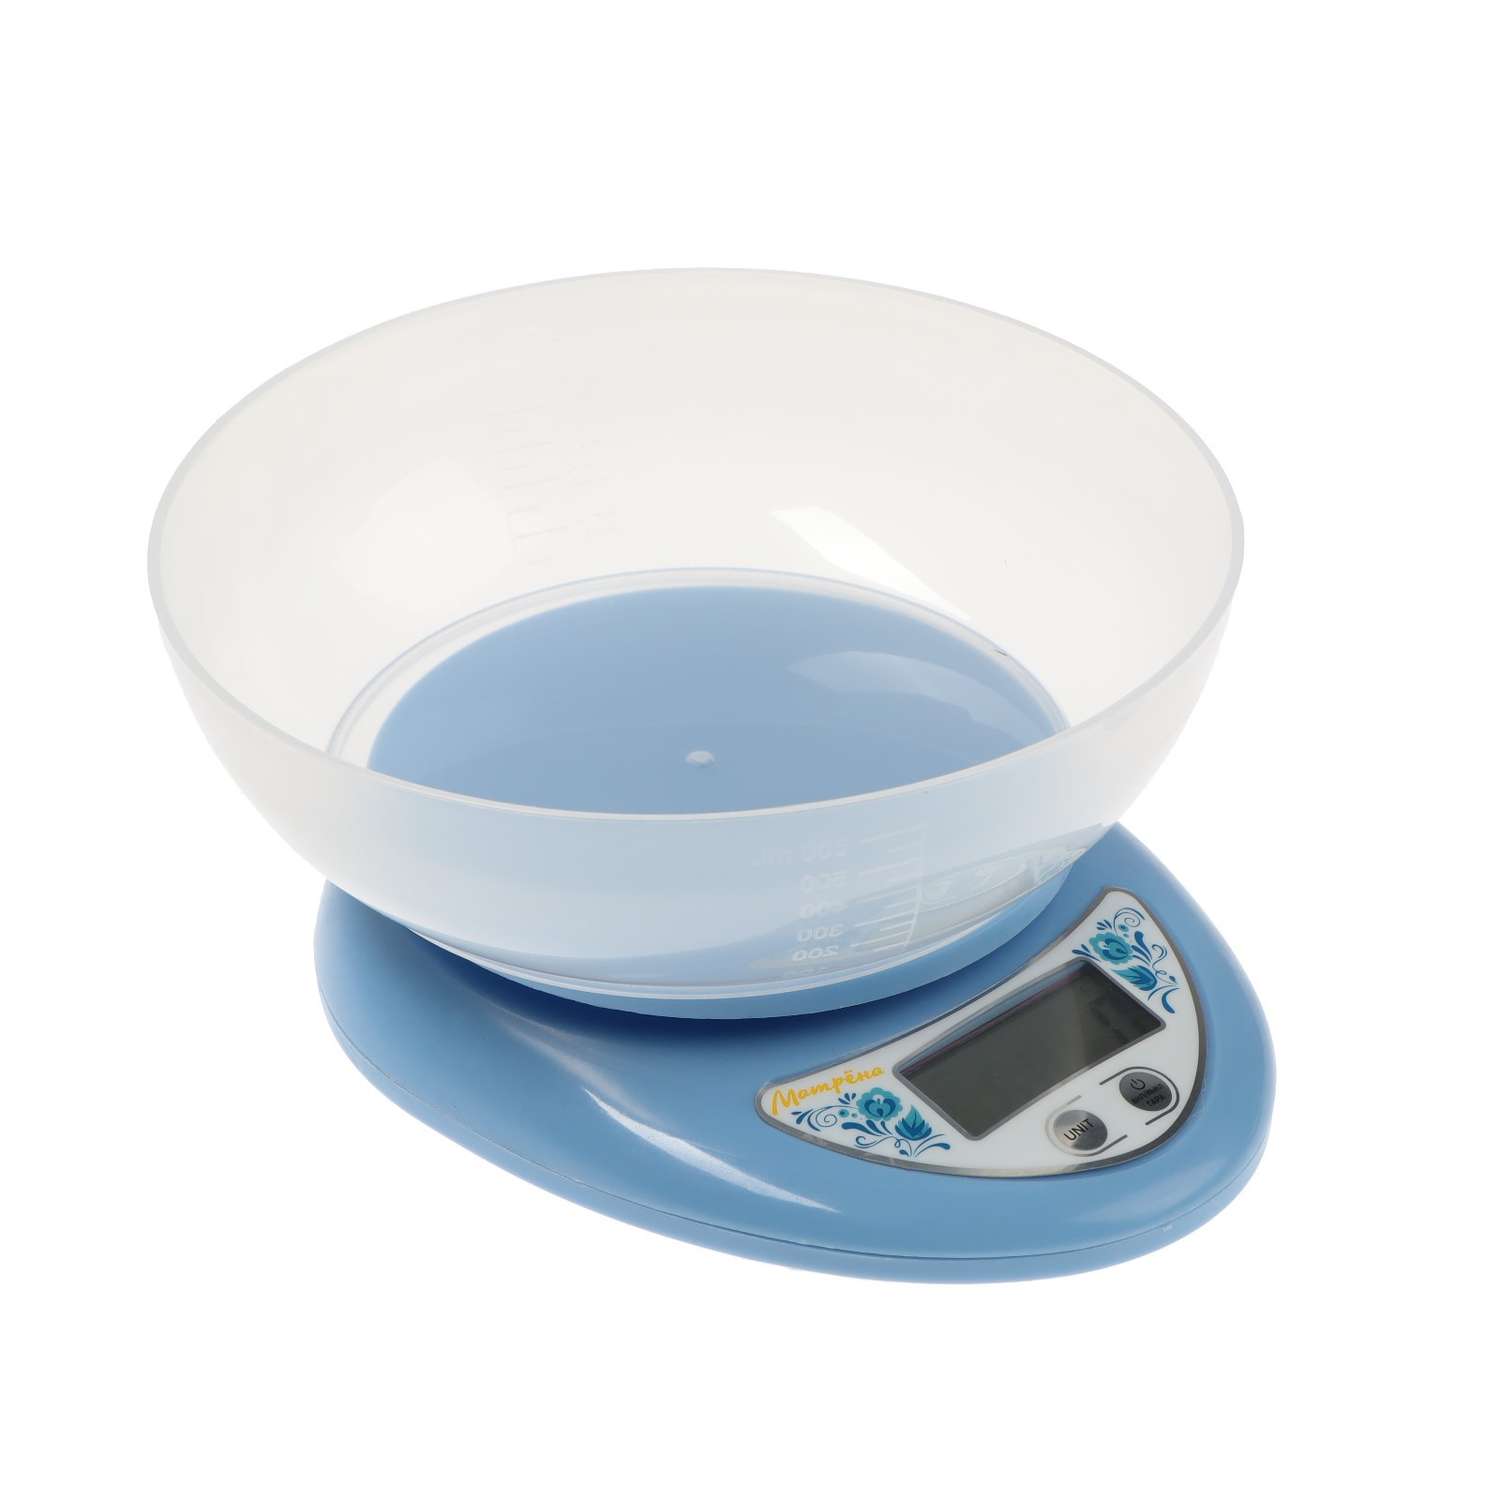 Весы кухонные Luazon Home МА-186 электронные до 5 кг голубые - фото 2